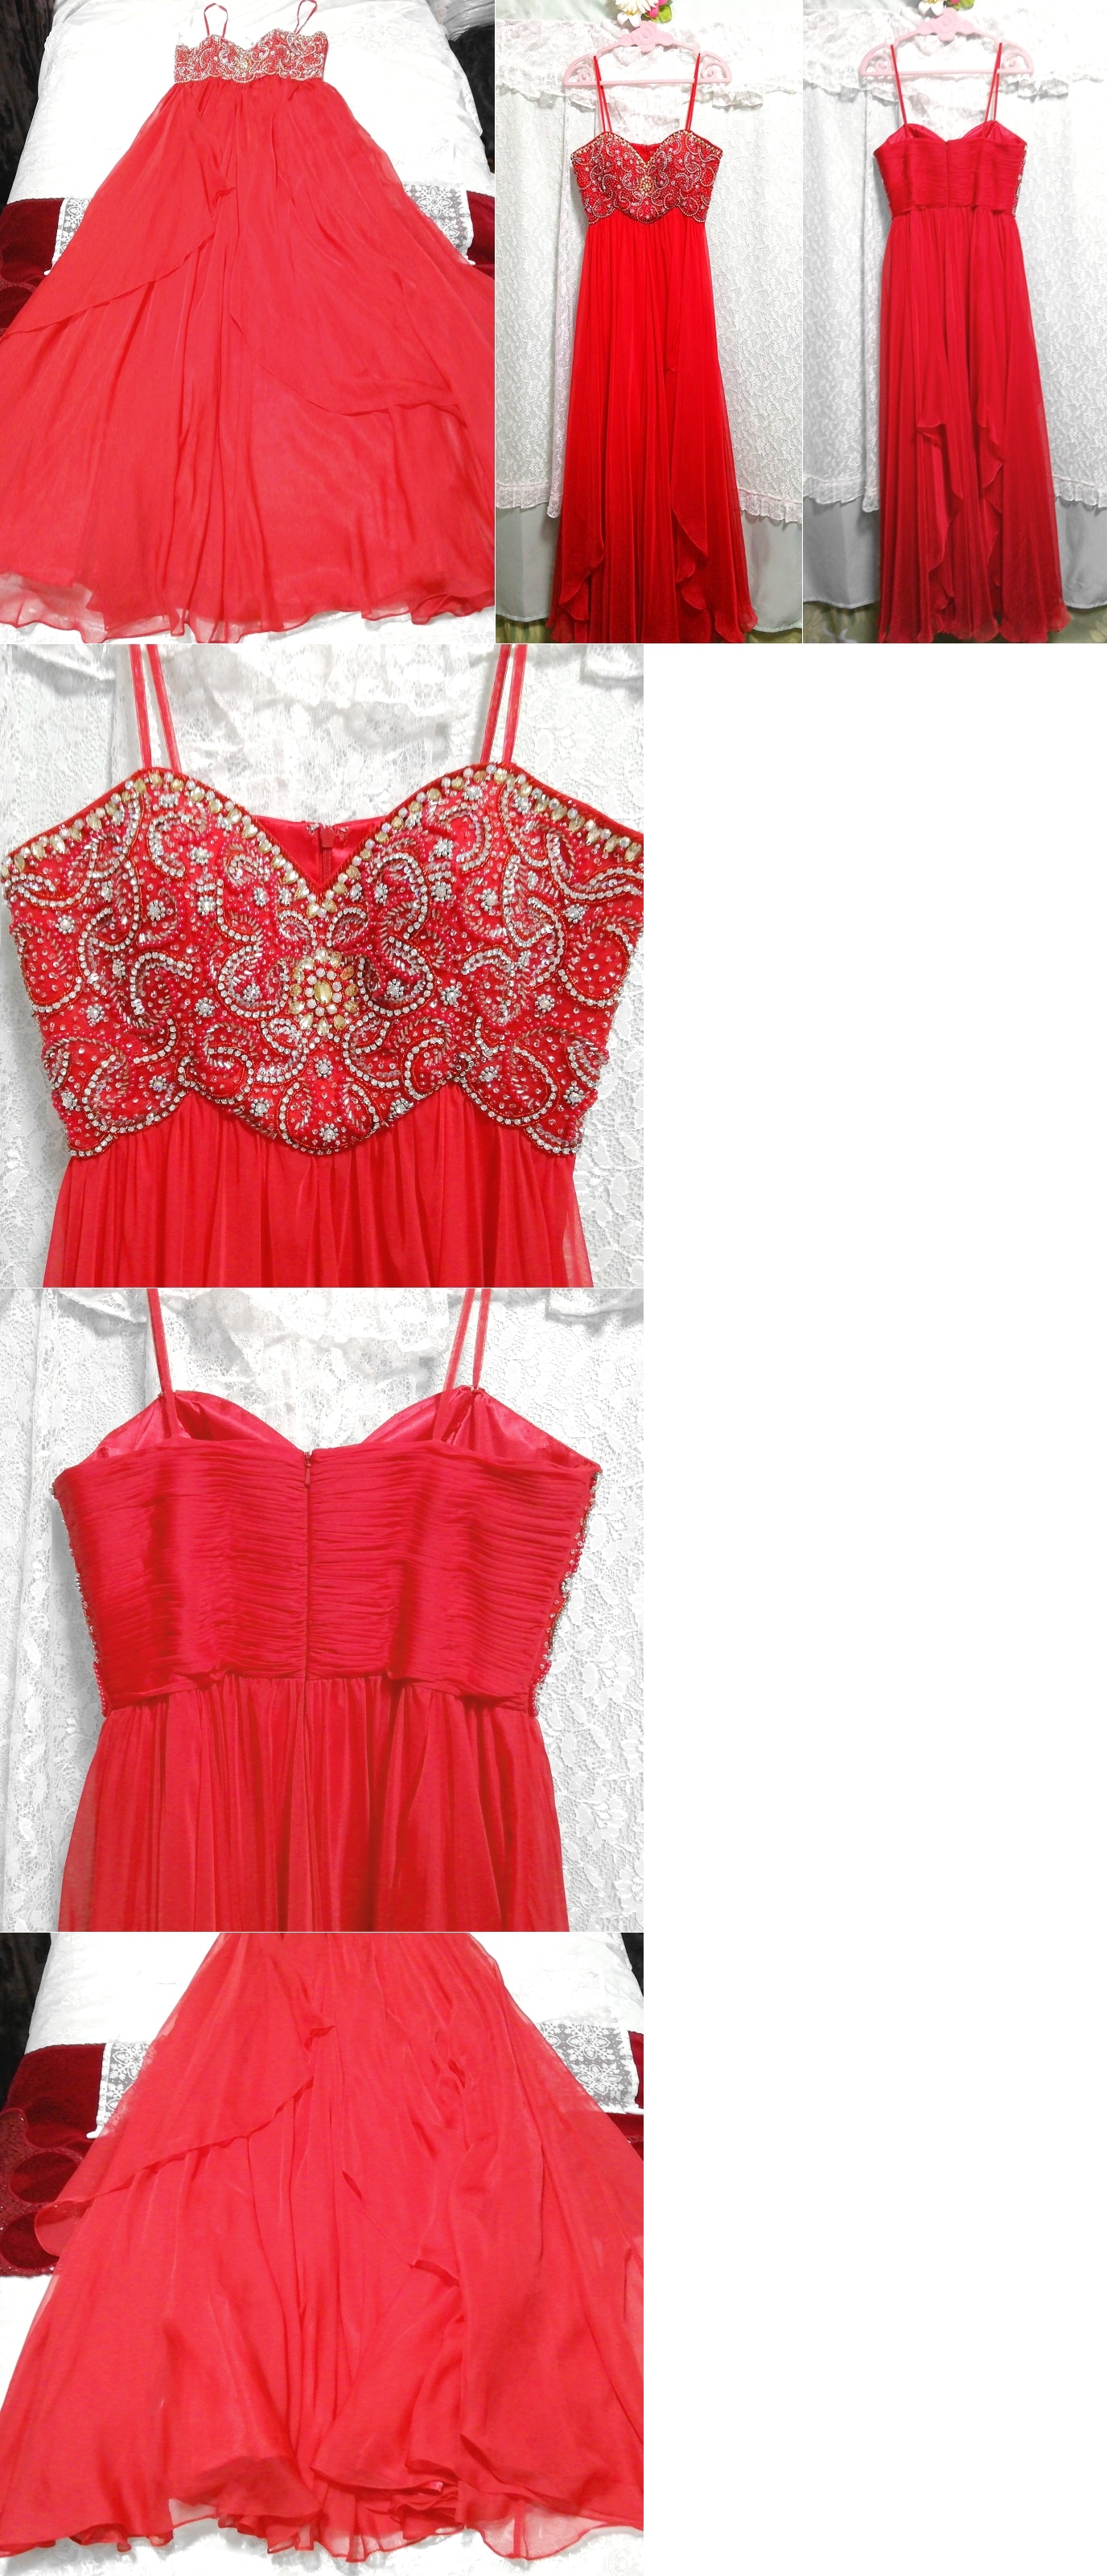 فستان نوم طويل من الشيفون الفاخر باللون الأحمر القرمزي, تنورة طويلة, حجم م